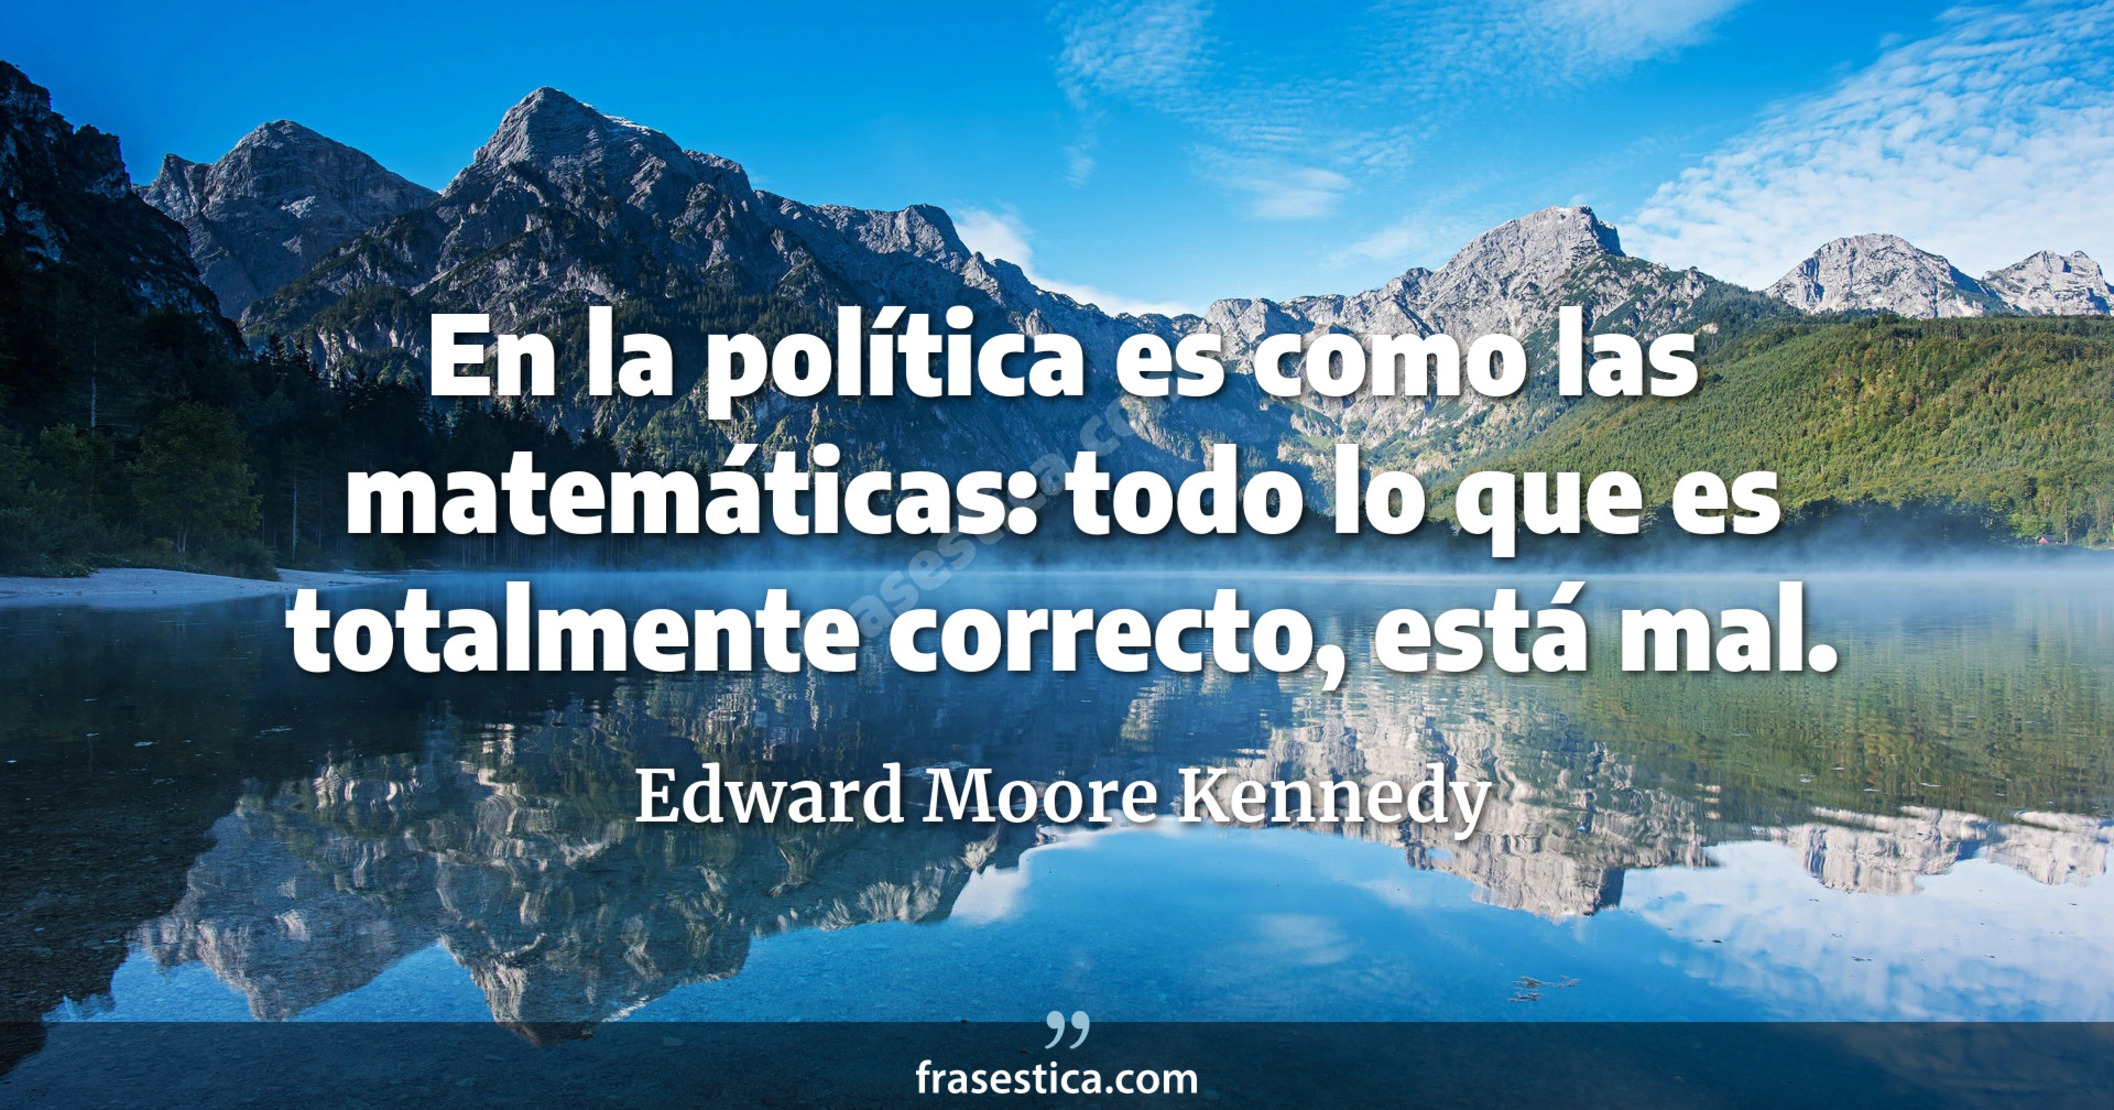 En la política es como las matemáticas: todo lo que es totalmente correcto, está mal. - Edward Moore Kennedy